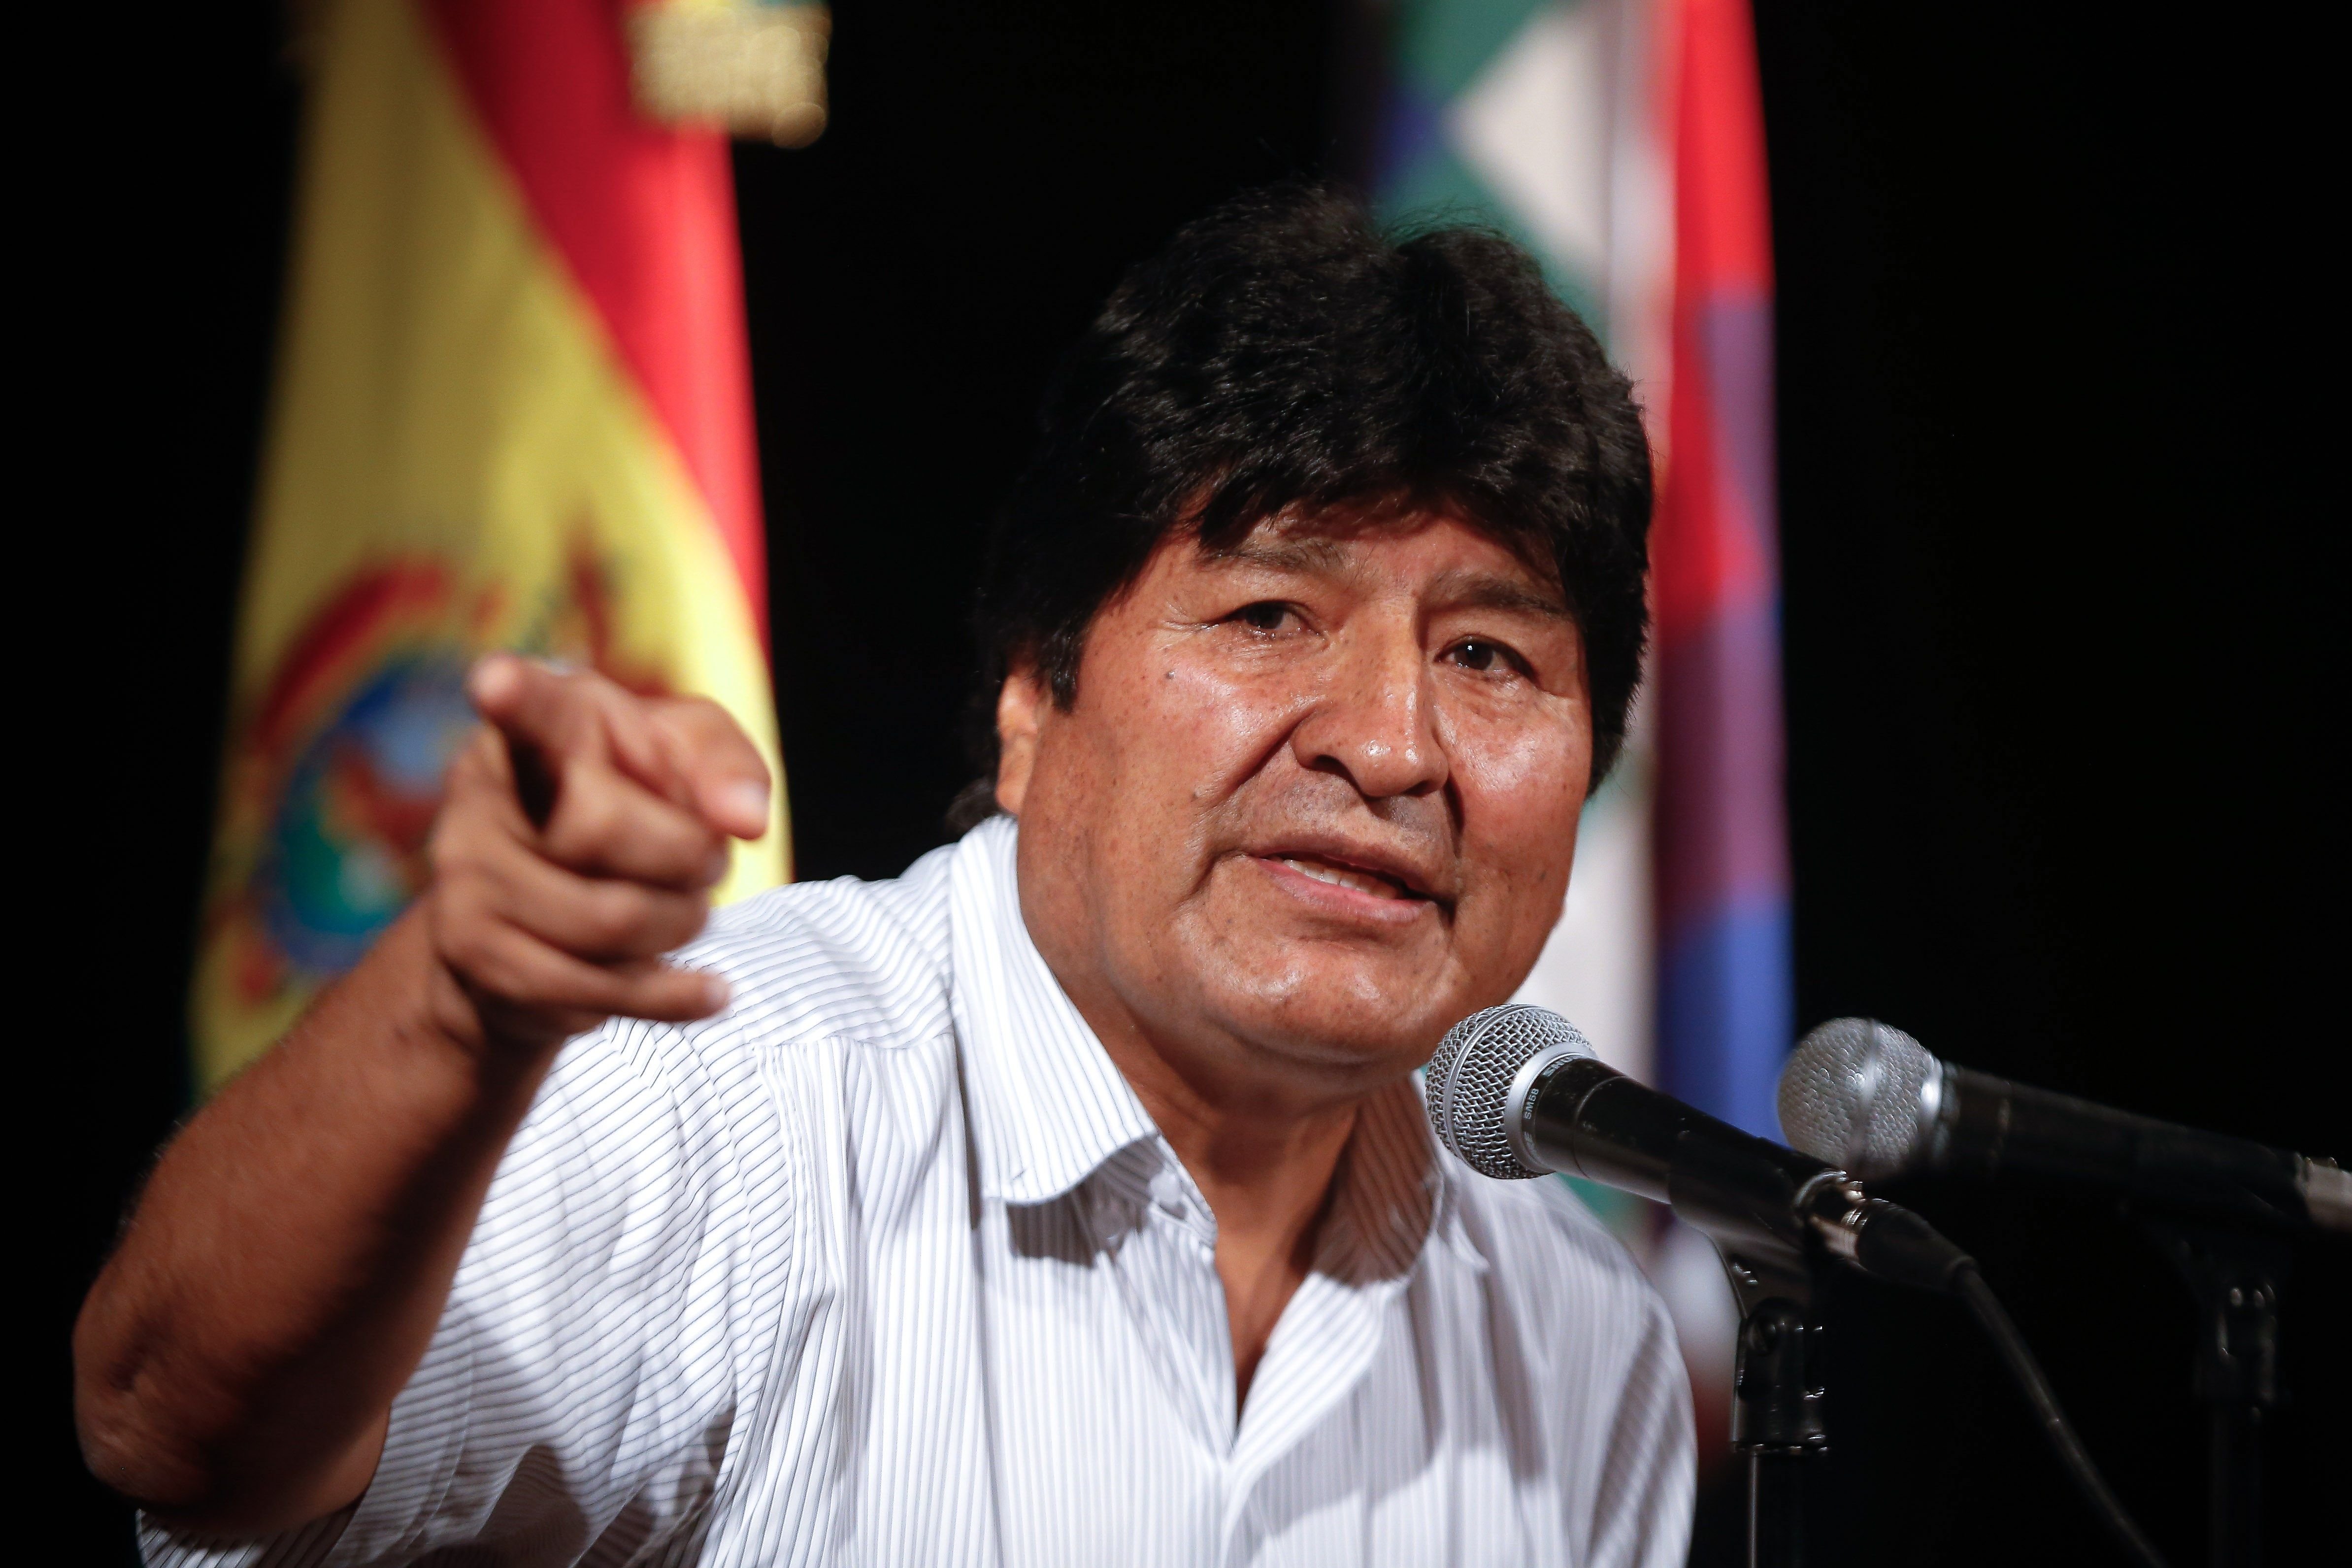 Evo Morales fitxa Baltasar Garzón per el seu equip de defensa